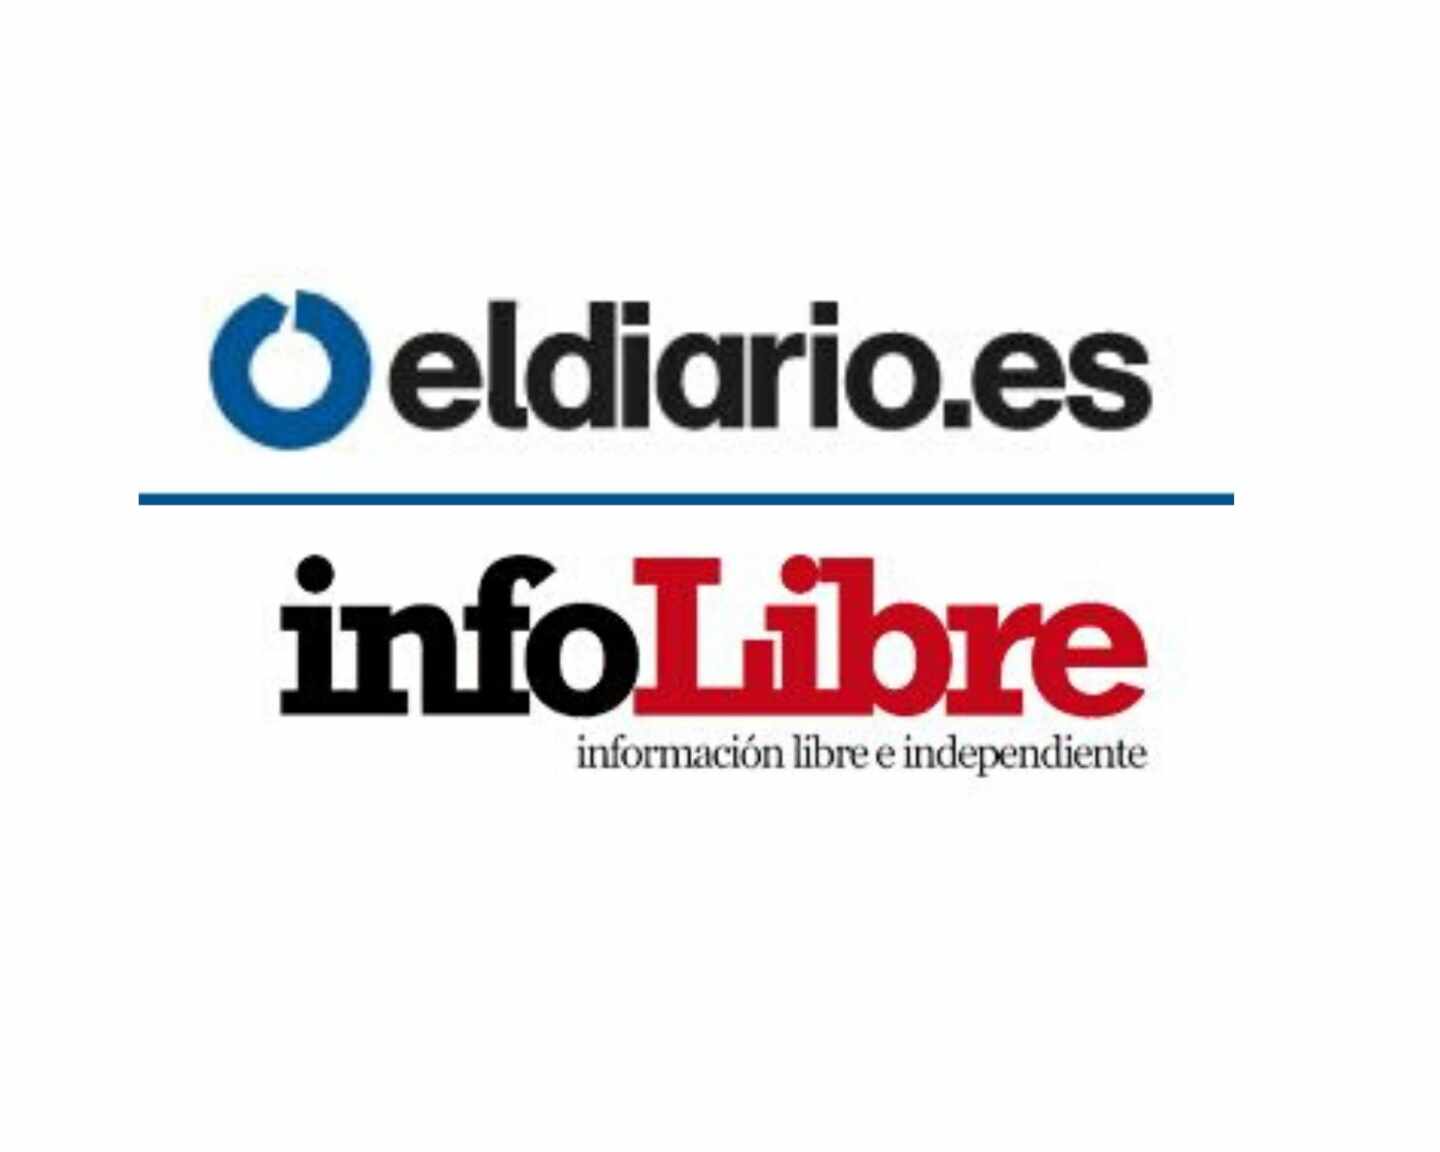 Acuerdo de colaboración entre eldiario.es e infoLibre